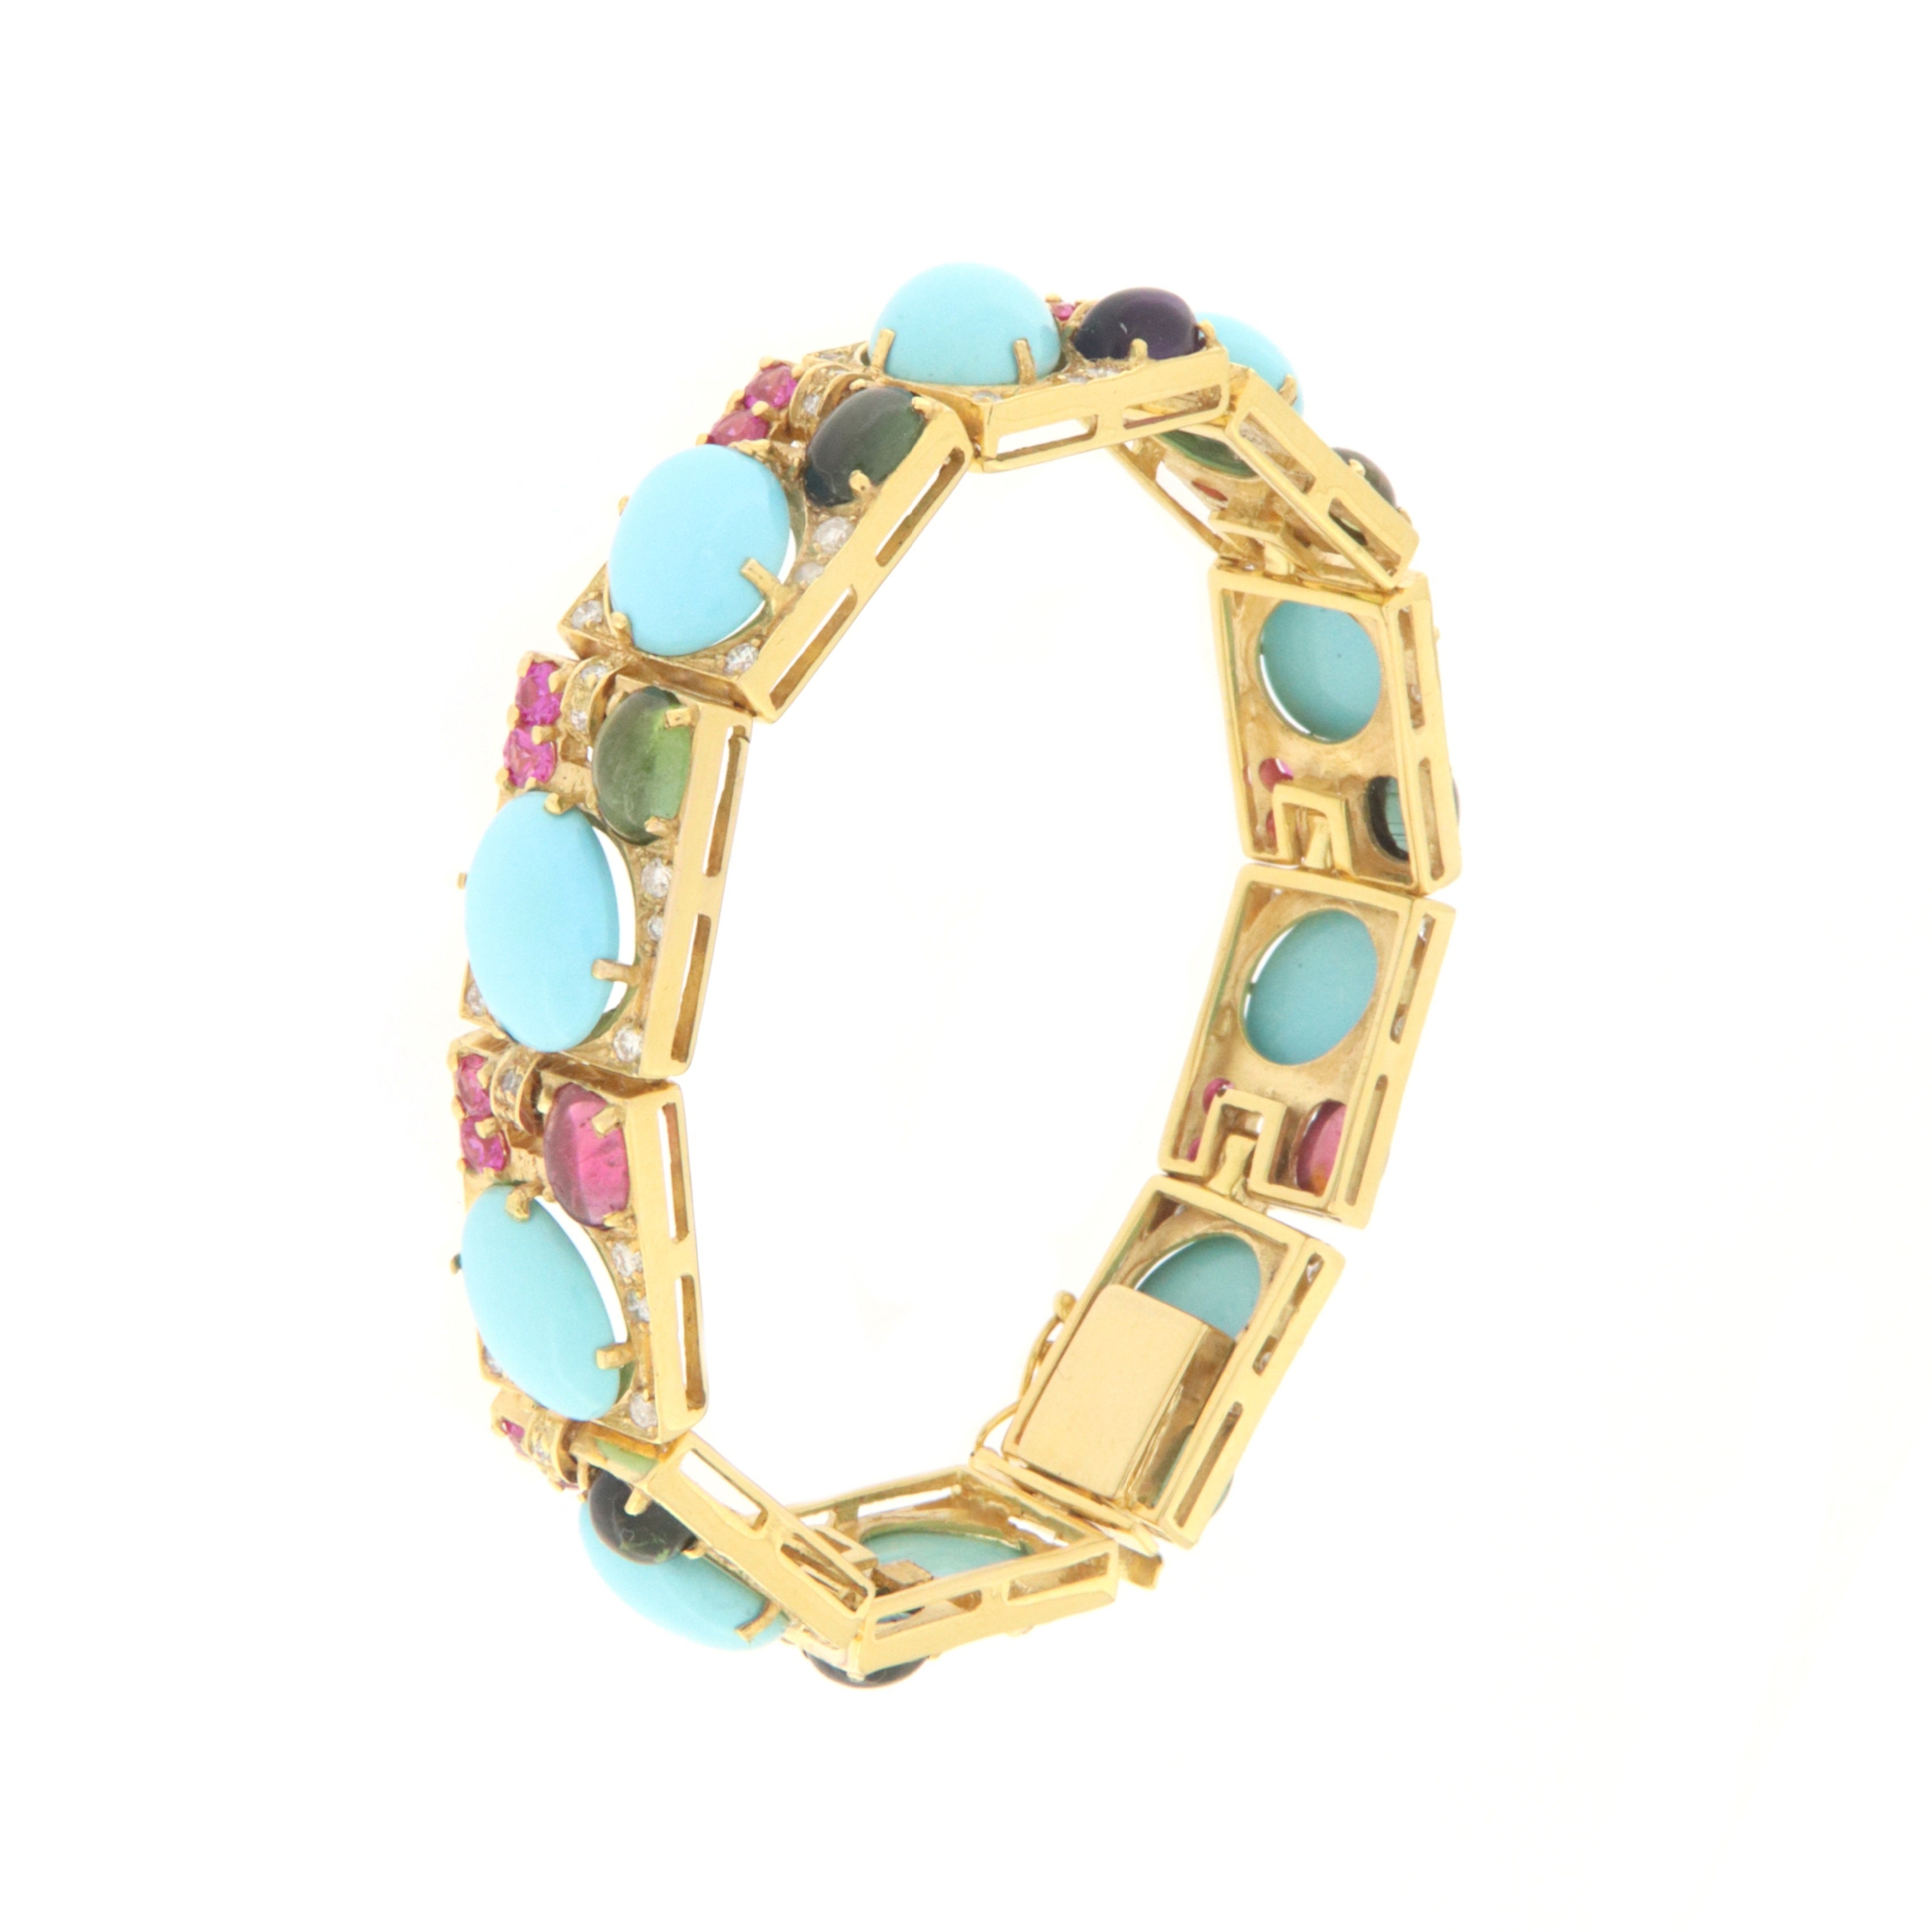 Magnifique bracelet en or jaune 14 carats monté avec turquoise naturelle, diamants, rubis et tourmaline.
Ce bracelet a été conçu et réalisé par des orfèvres napolitains. Le bracelet est doux au poignet, il est flashy et s'adapte à tout type de